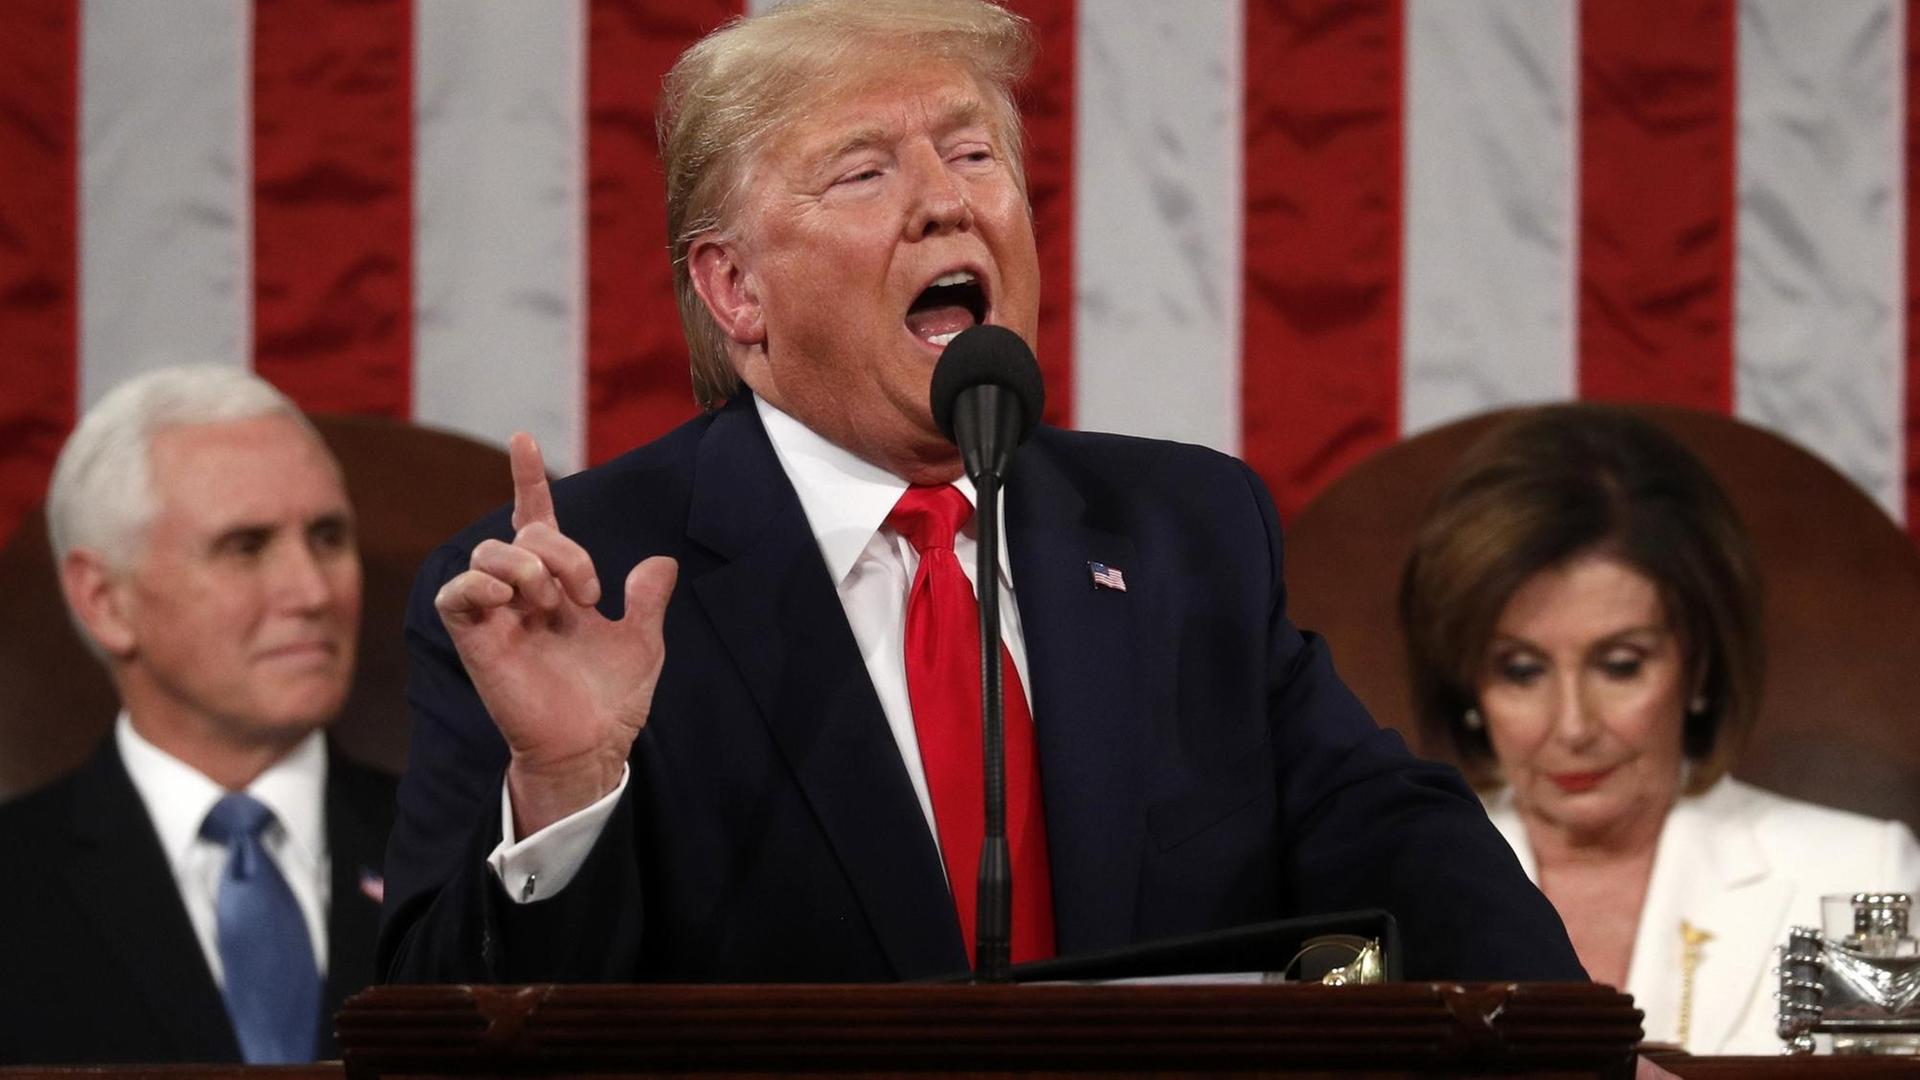 US-Präsident Trump steht an einem Rednerpunkt und spricht mit erhobenem Finger.